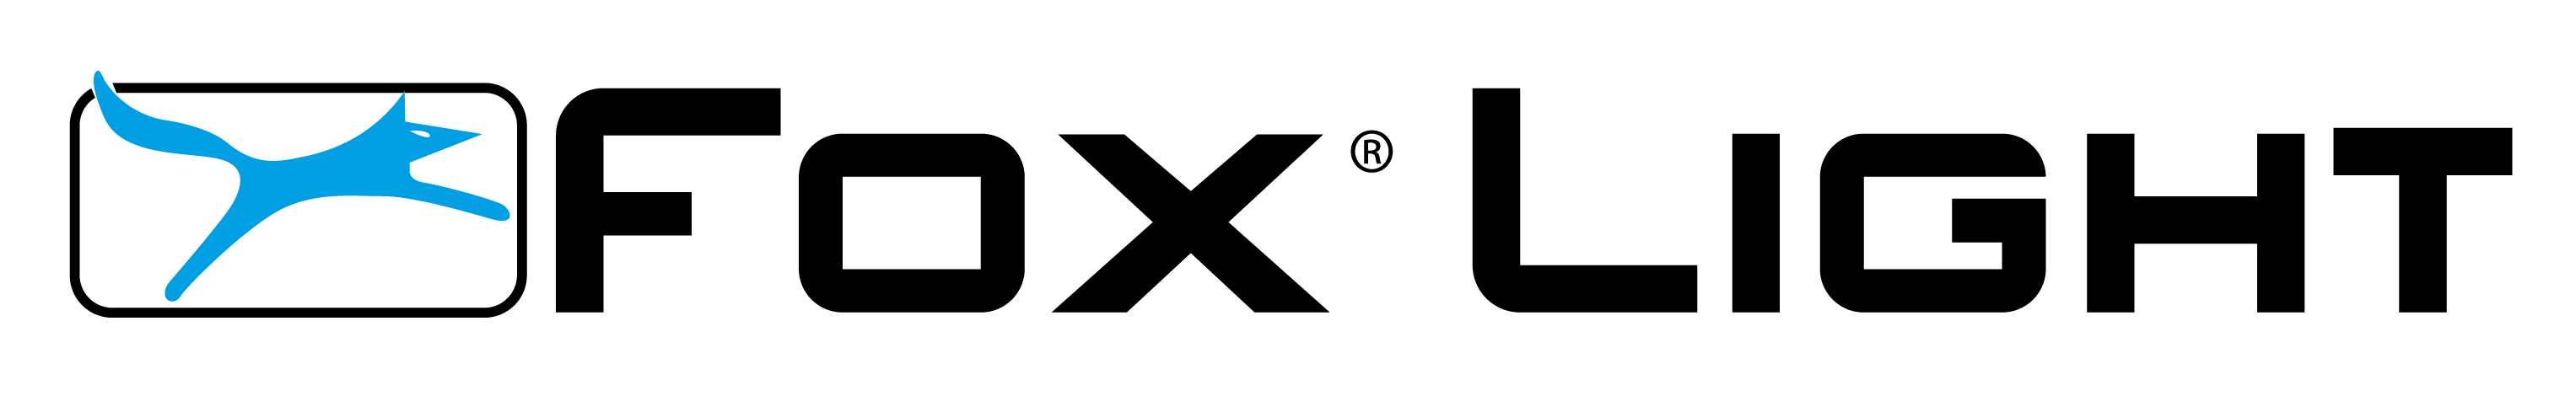 Foxlight Logo